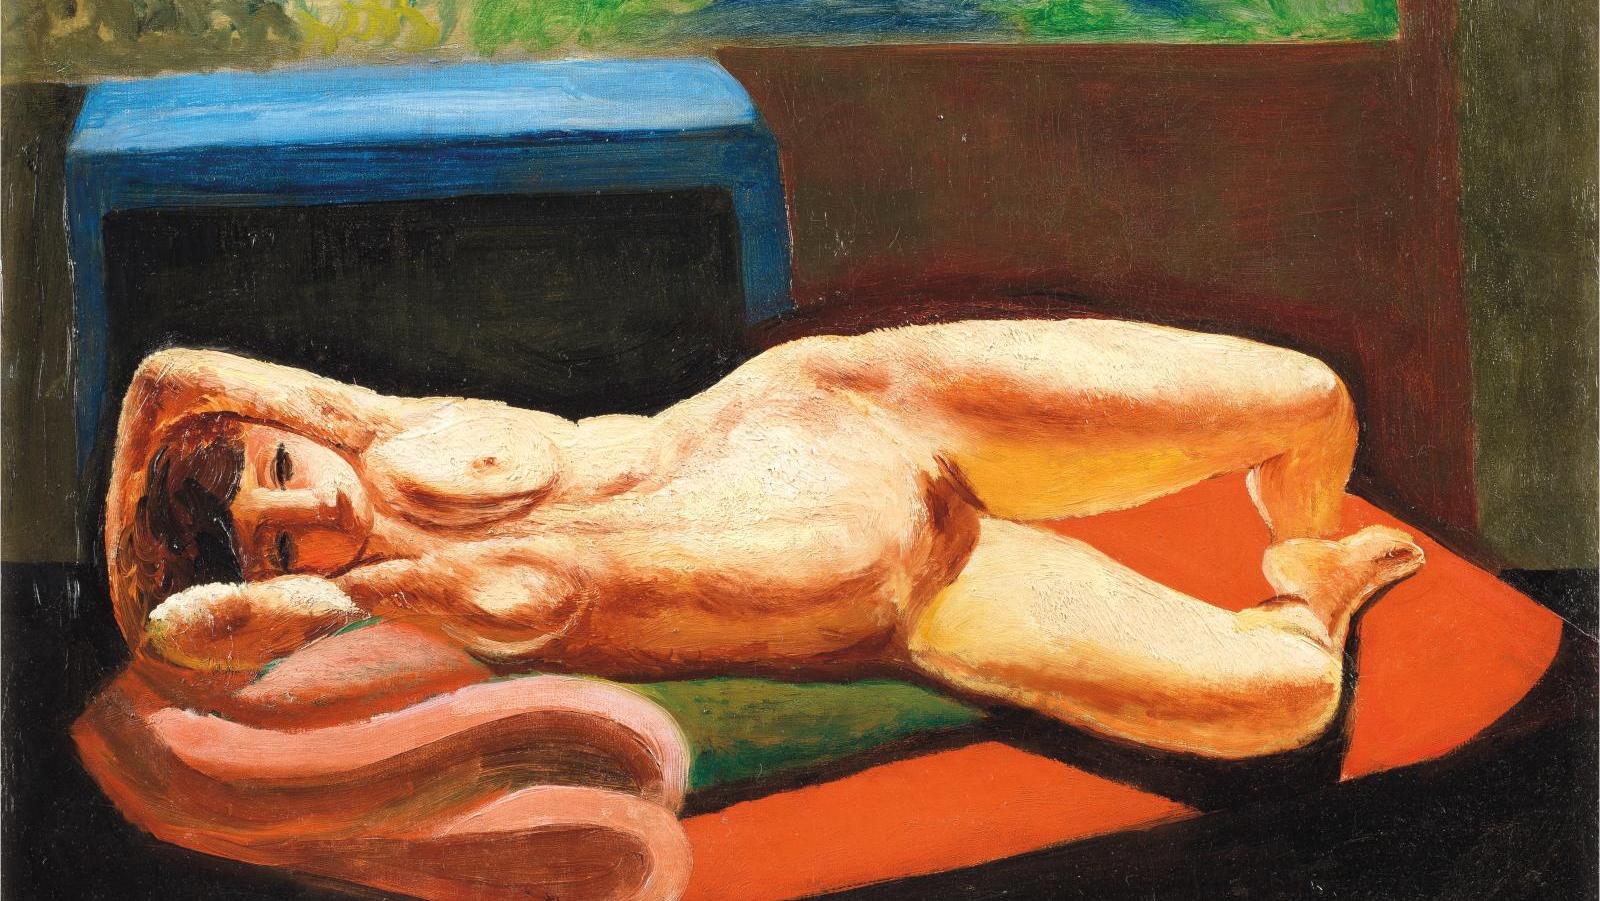 Moïse Kisling, Auguste Rodin et Georges Braque